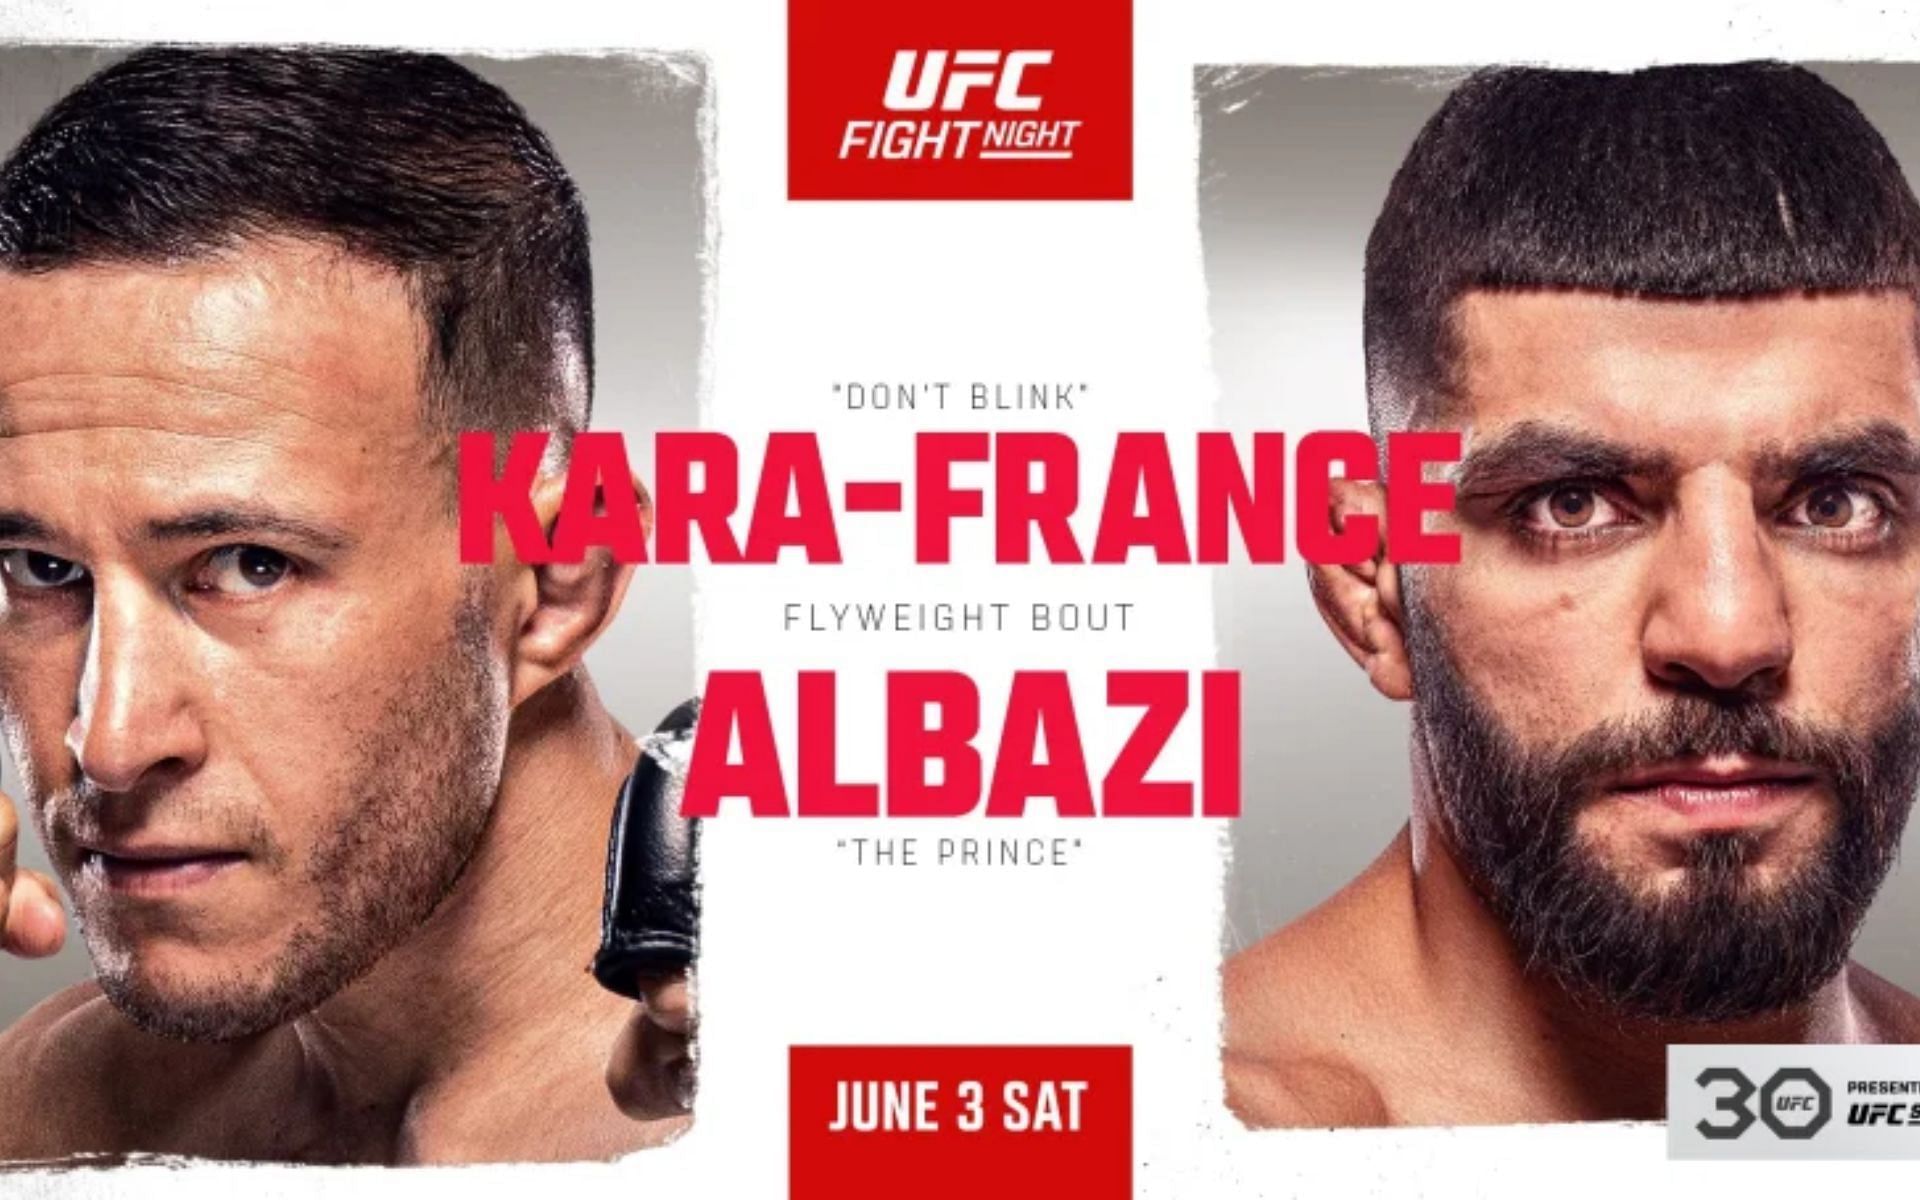 Kai Kara-France faces Amir Albazi this weekend in a flyweight clash